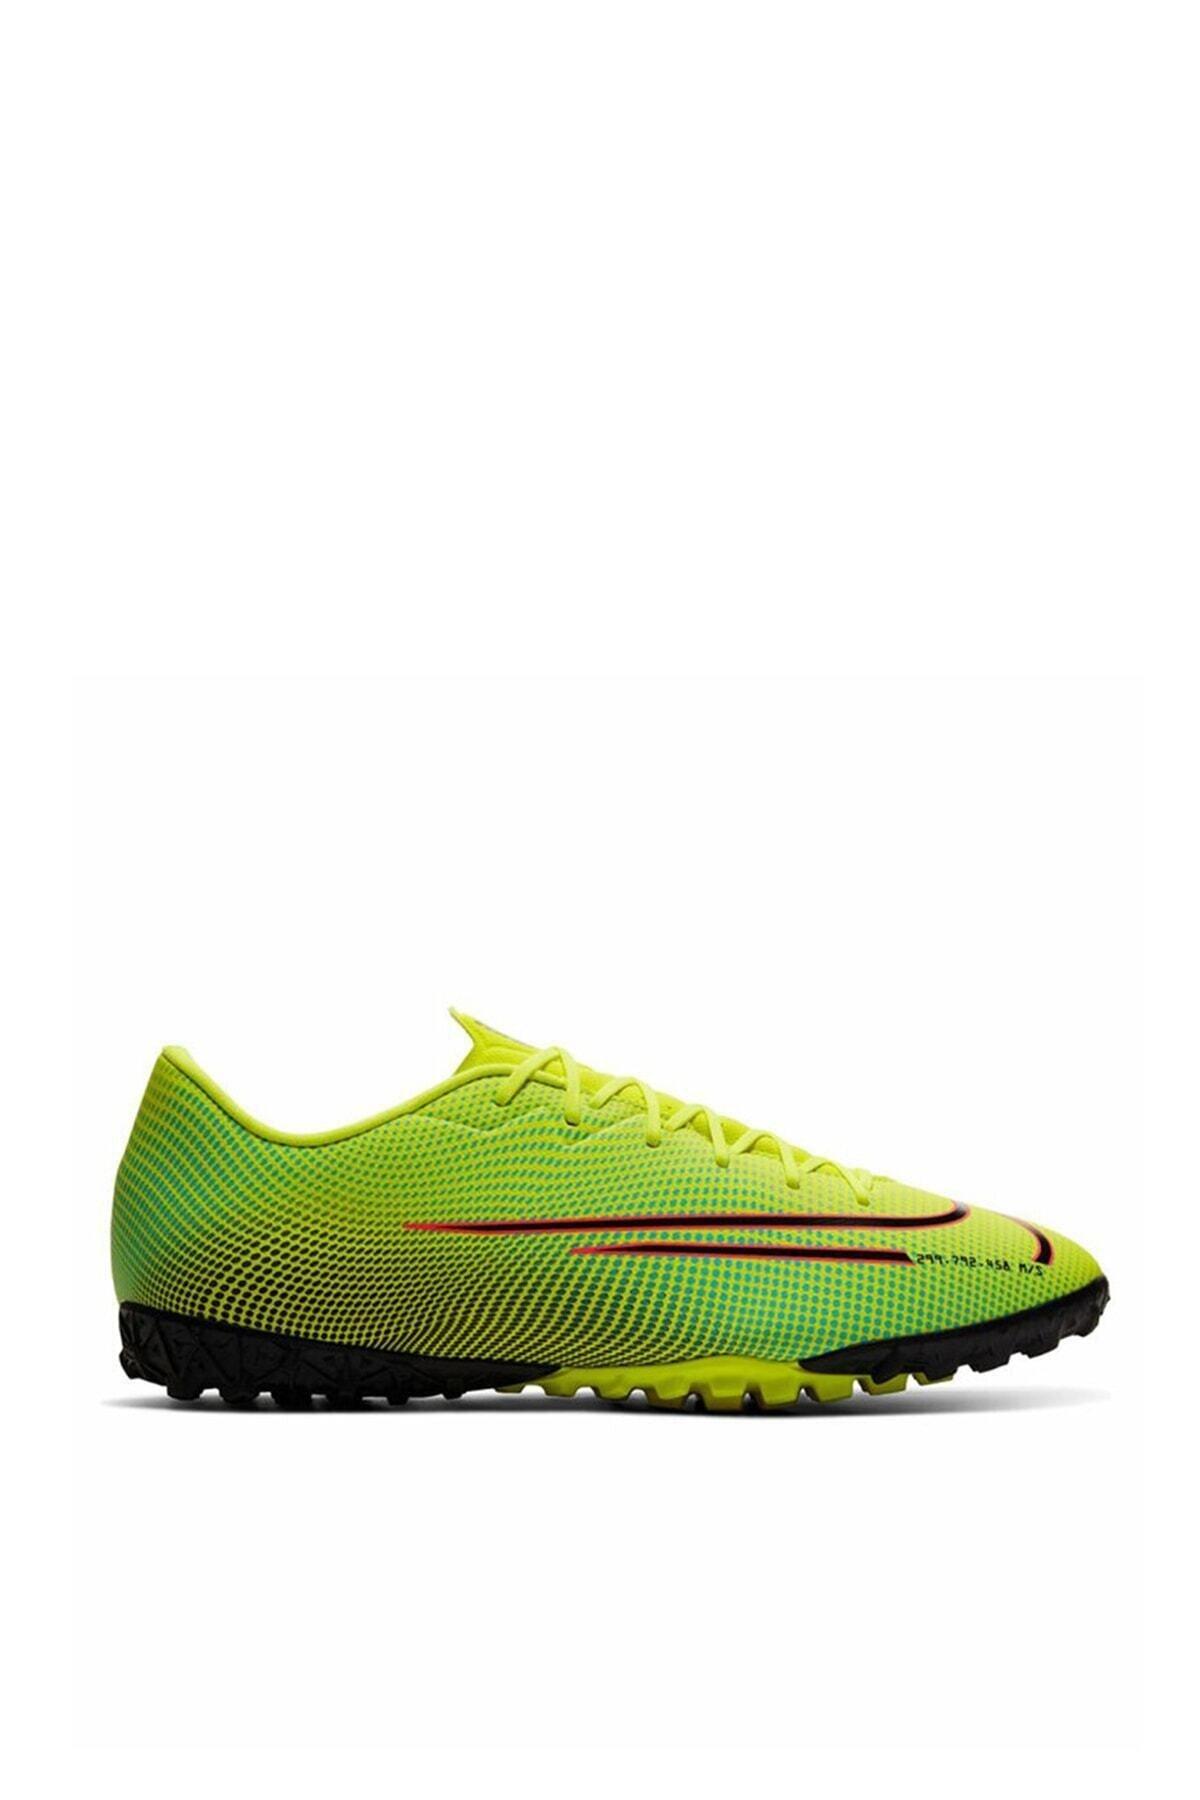 Nike Erkek Futbol Ayakkabısı Vapor 13 Academy TF CJ1306-703